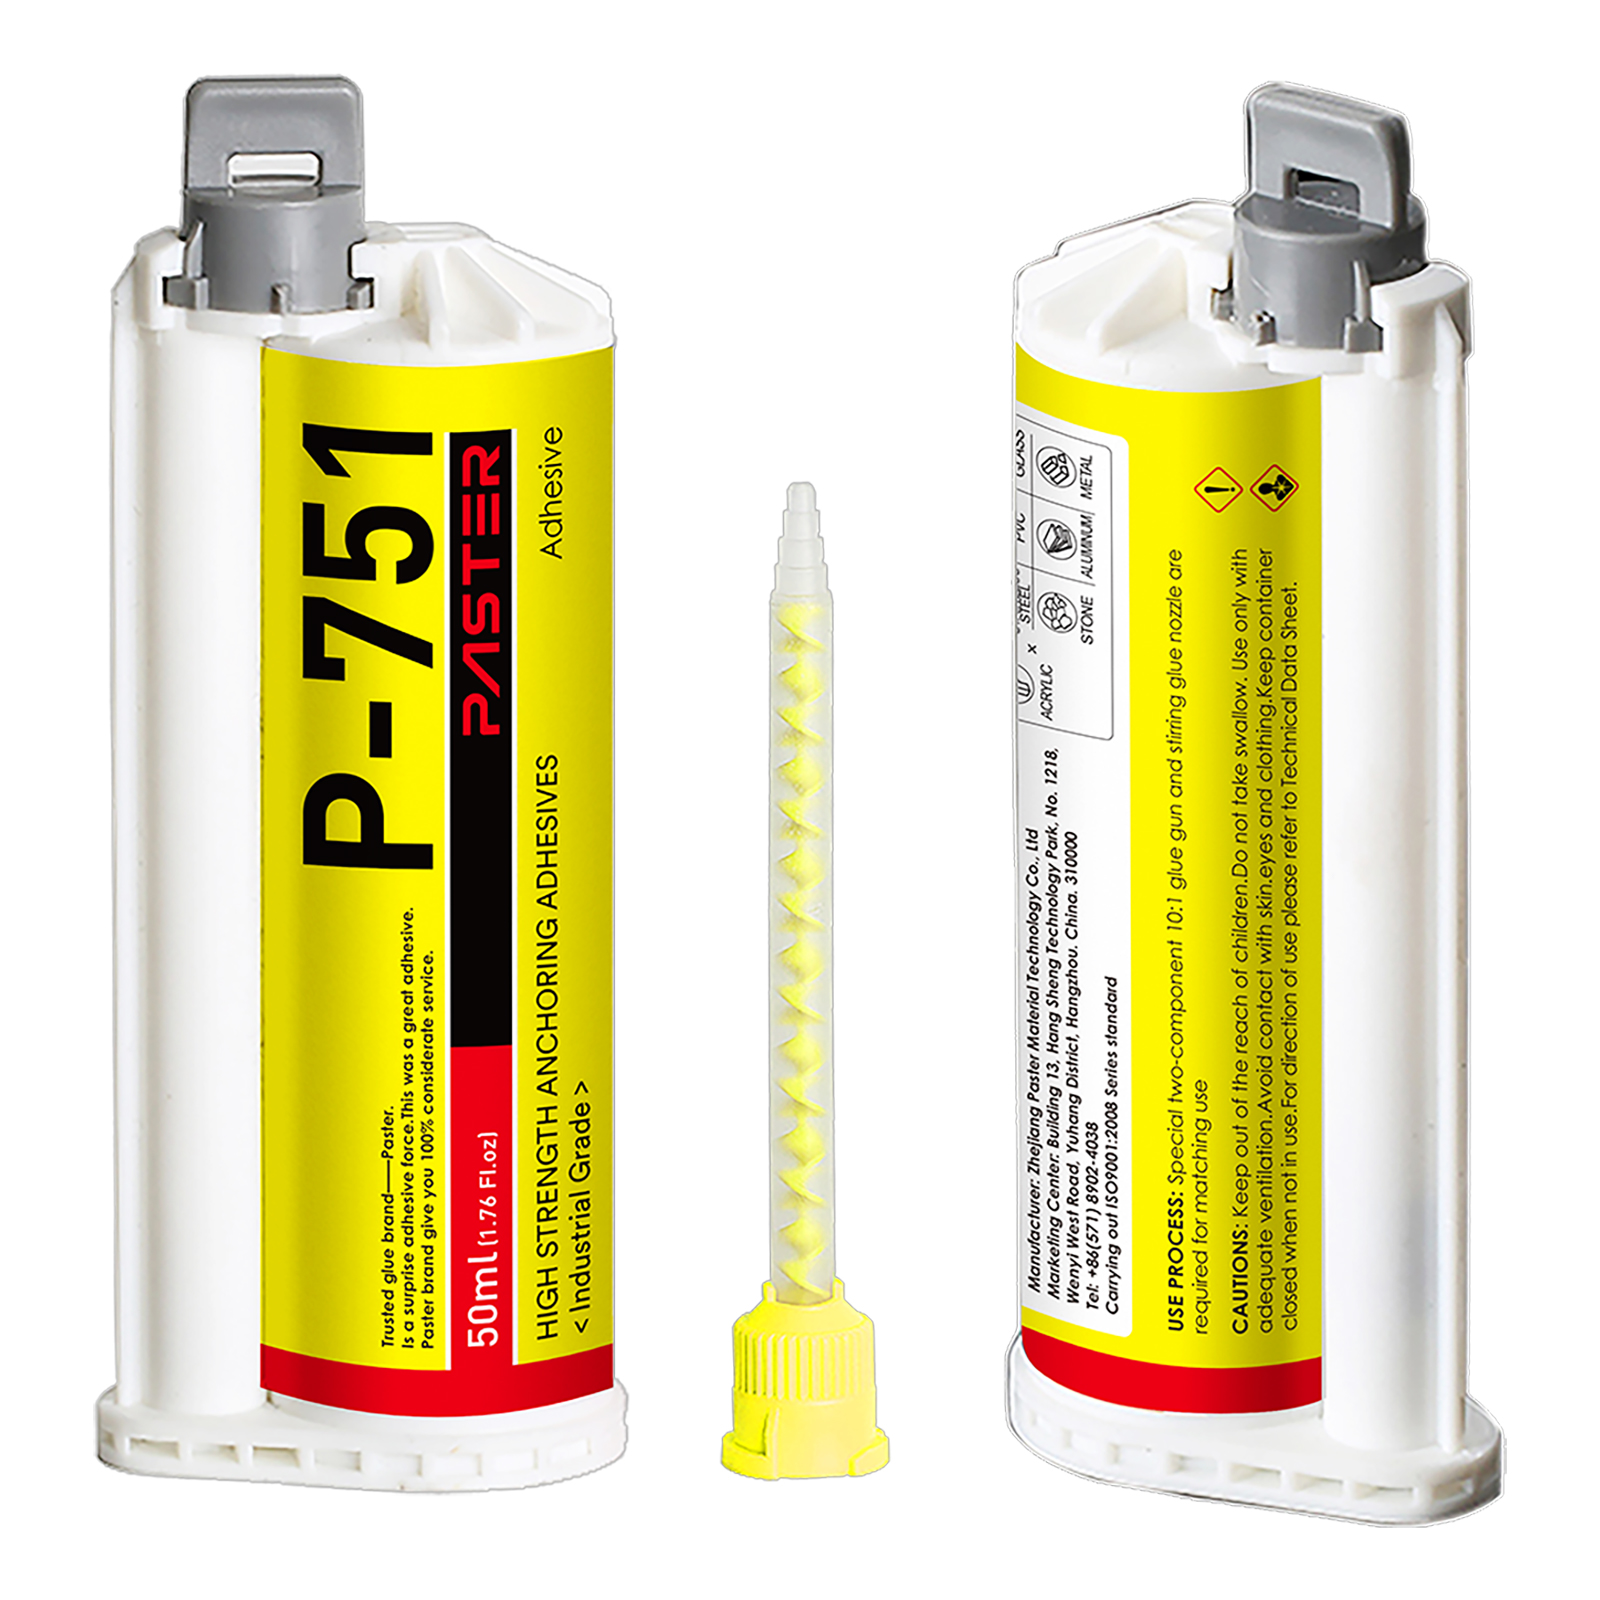 6pcs/pack P-751 Signage adhesive Acrylic adhesive High Strength Anchoring Adhesives 10:1 AB glue